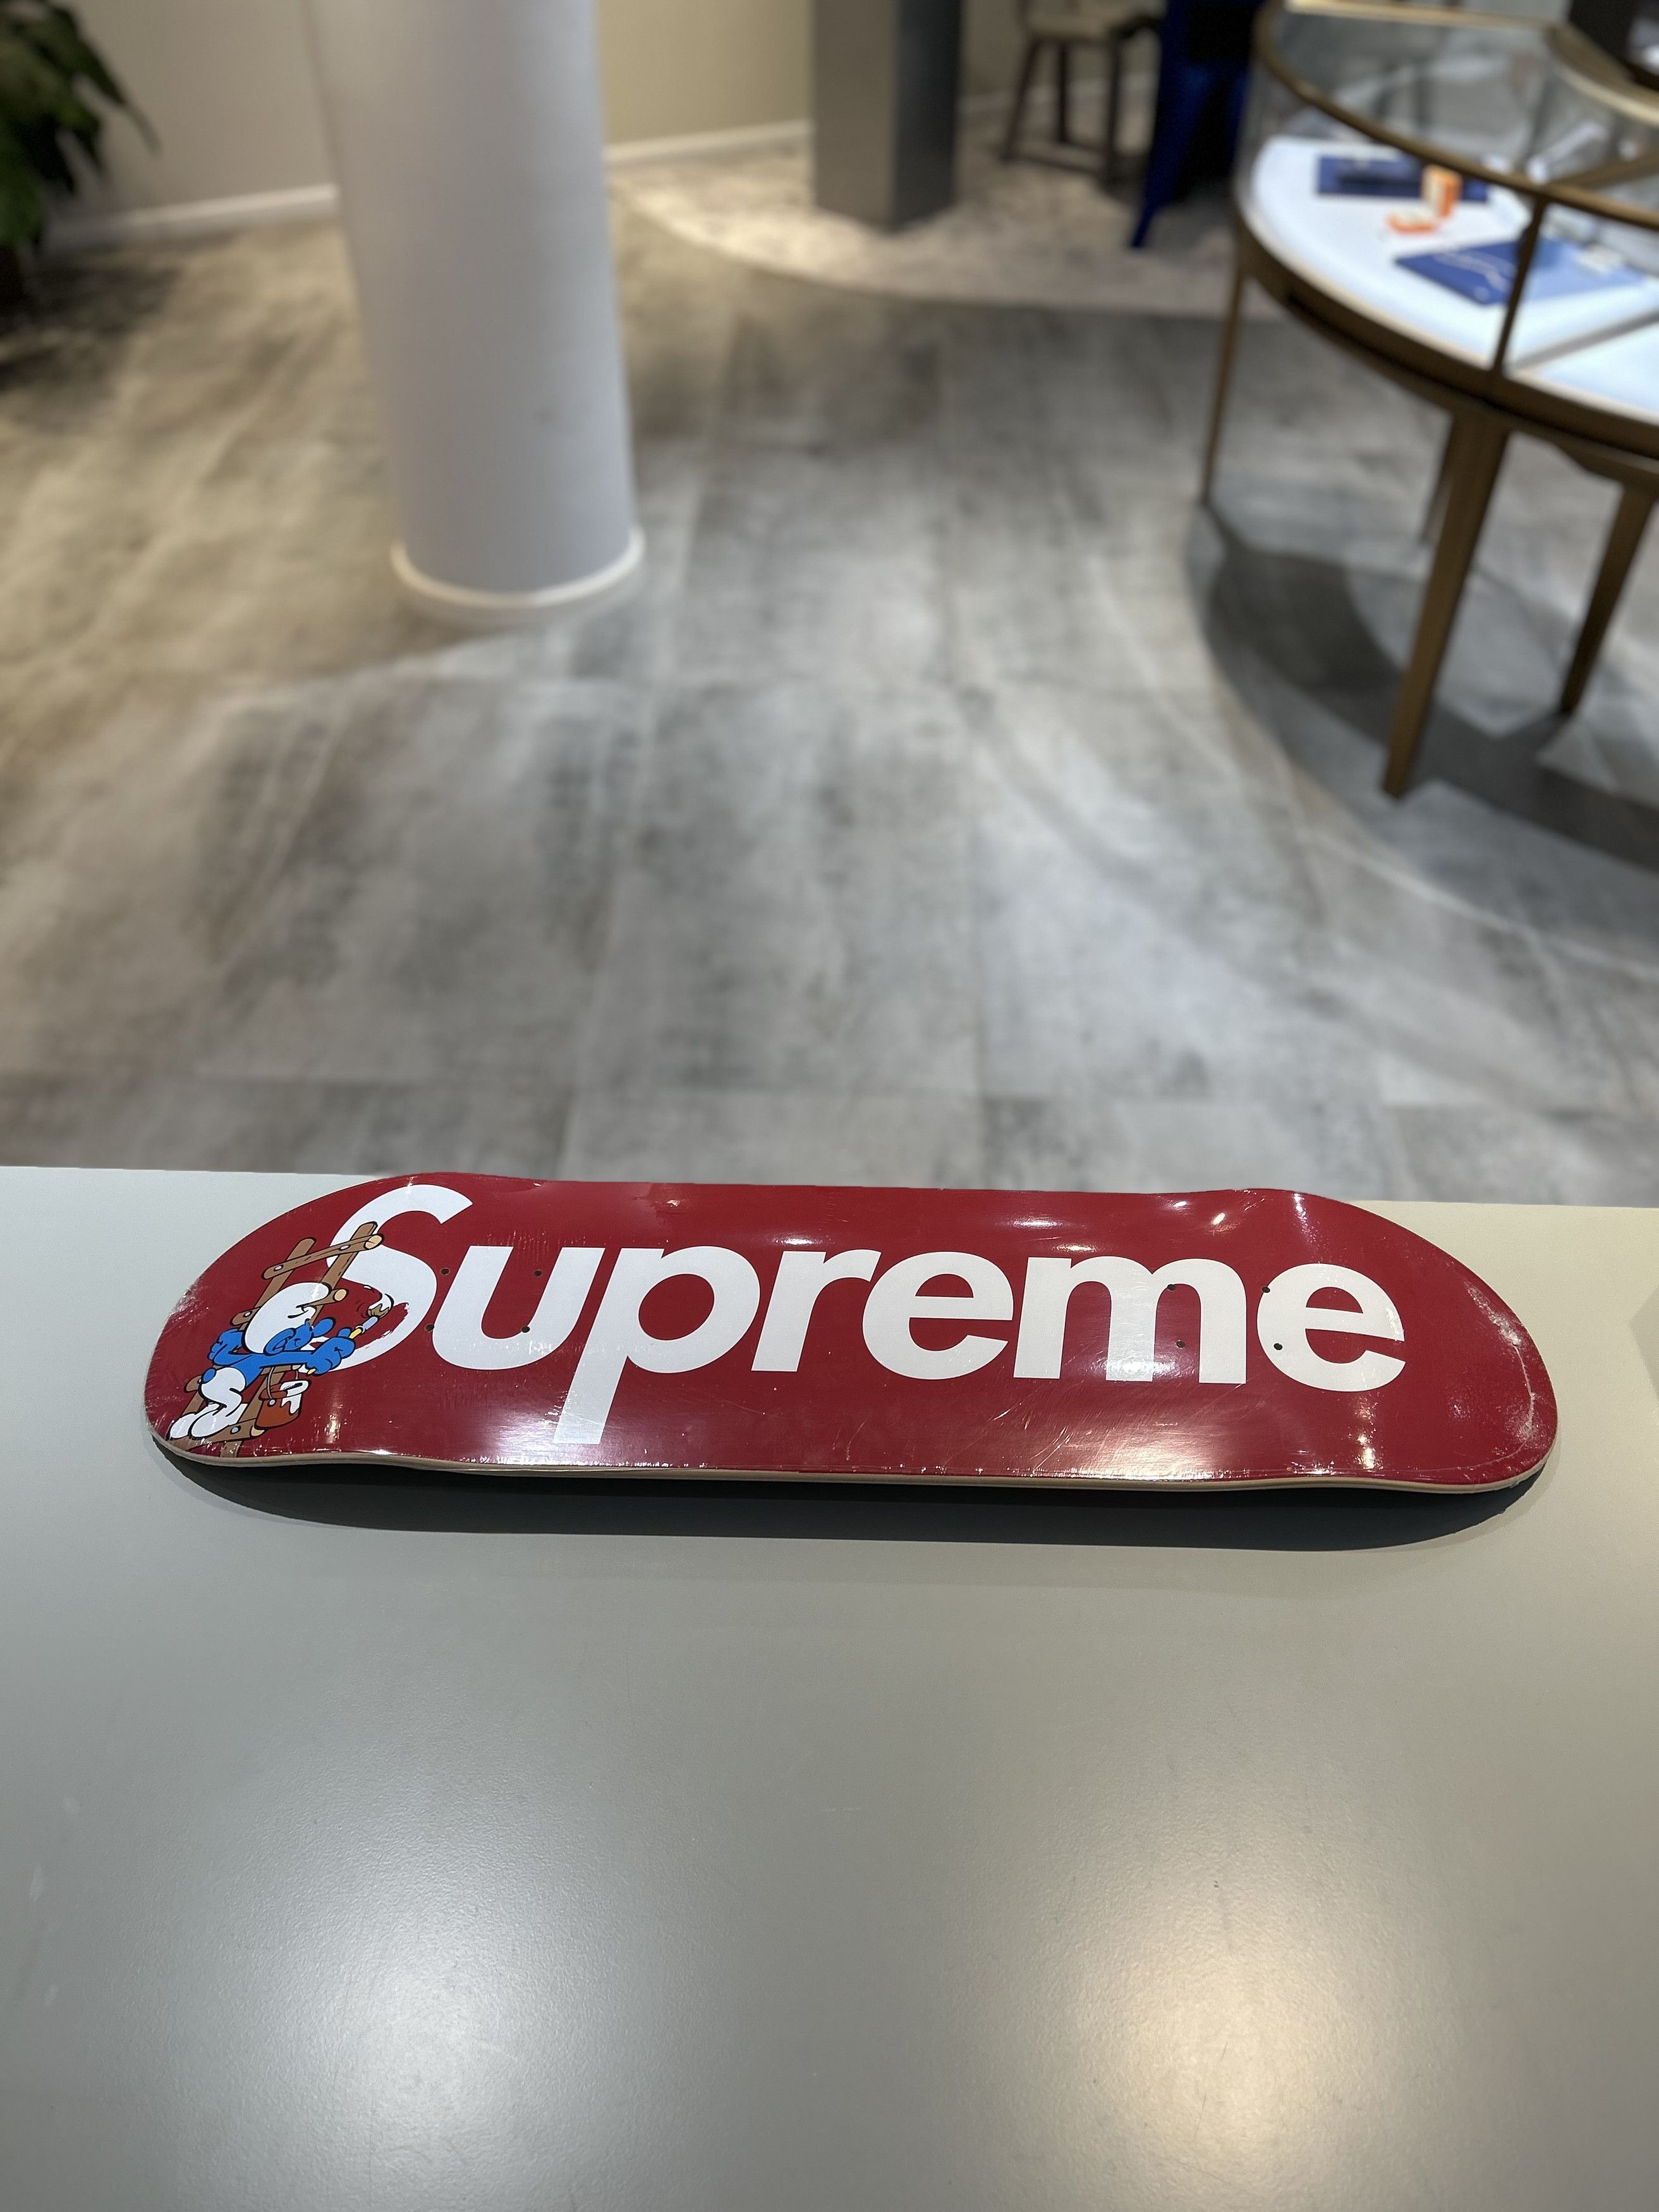 Supreme Supreme Smurfs Skateboard Red | Grailed